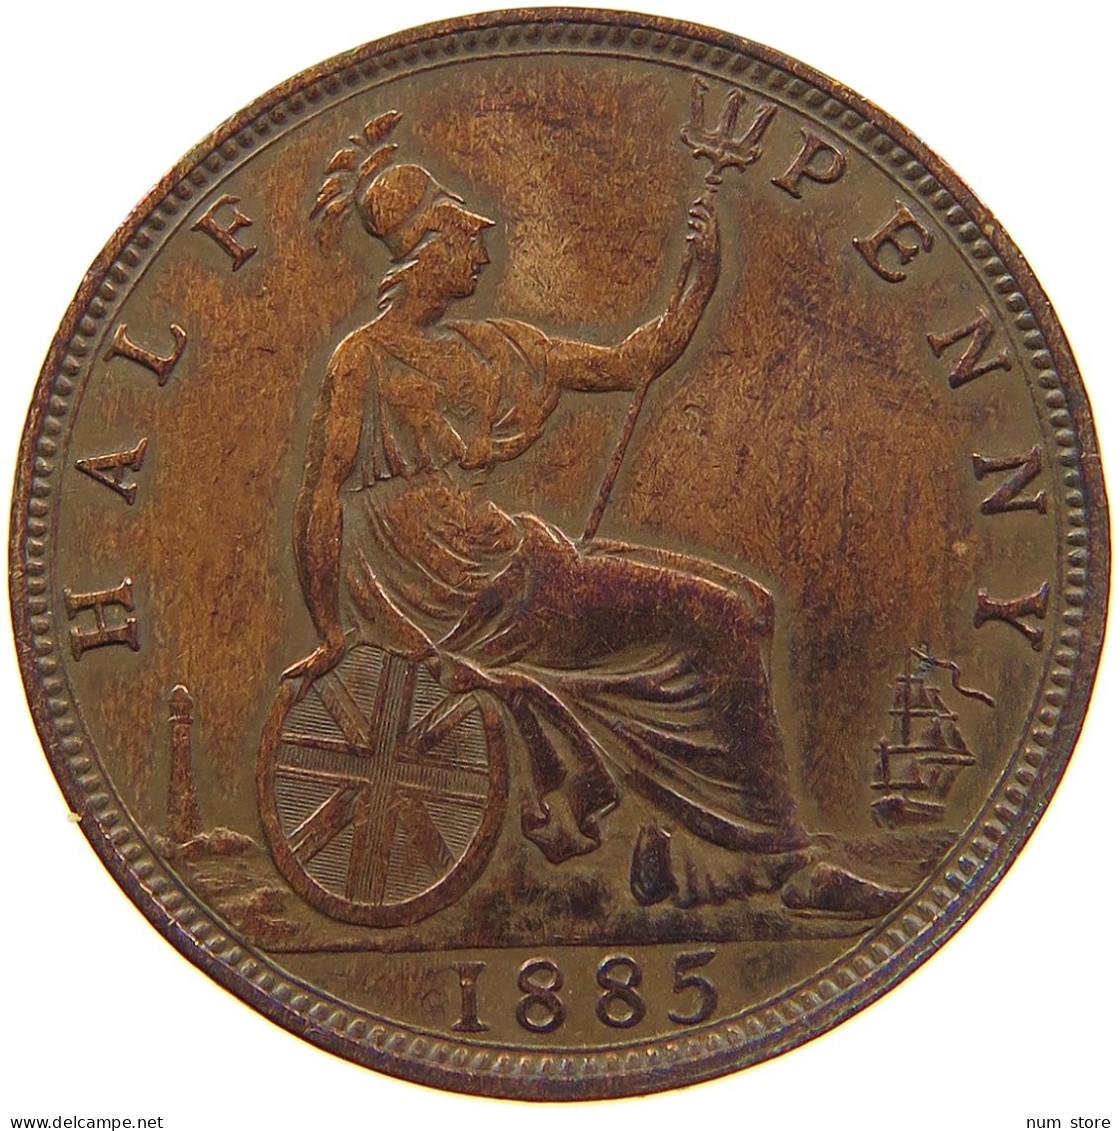 GREAT BRITAIN HALF PENNY 1885 Victoria 1837-1901 #t107 0061 - C. 1/2 Penny